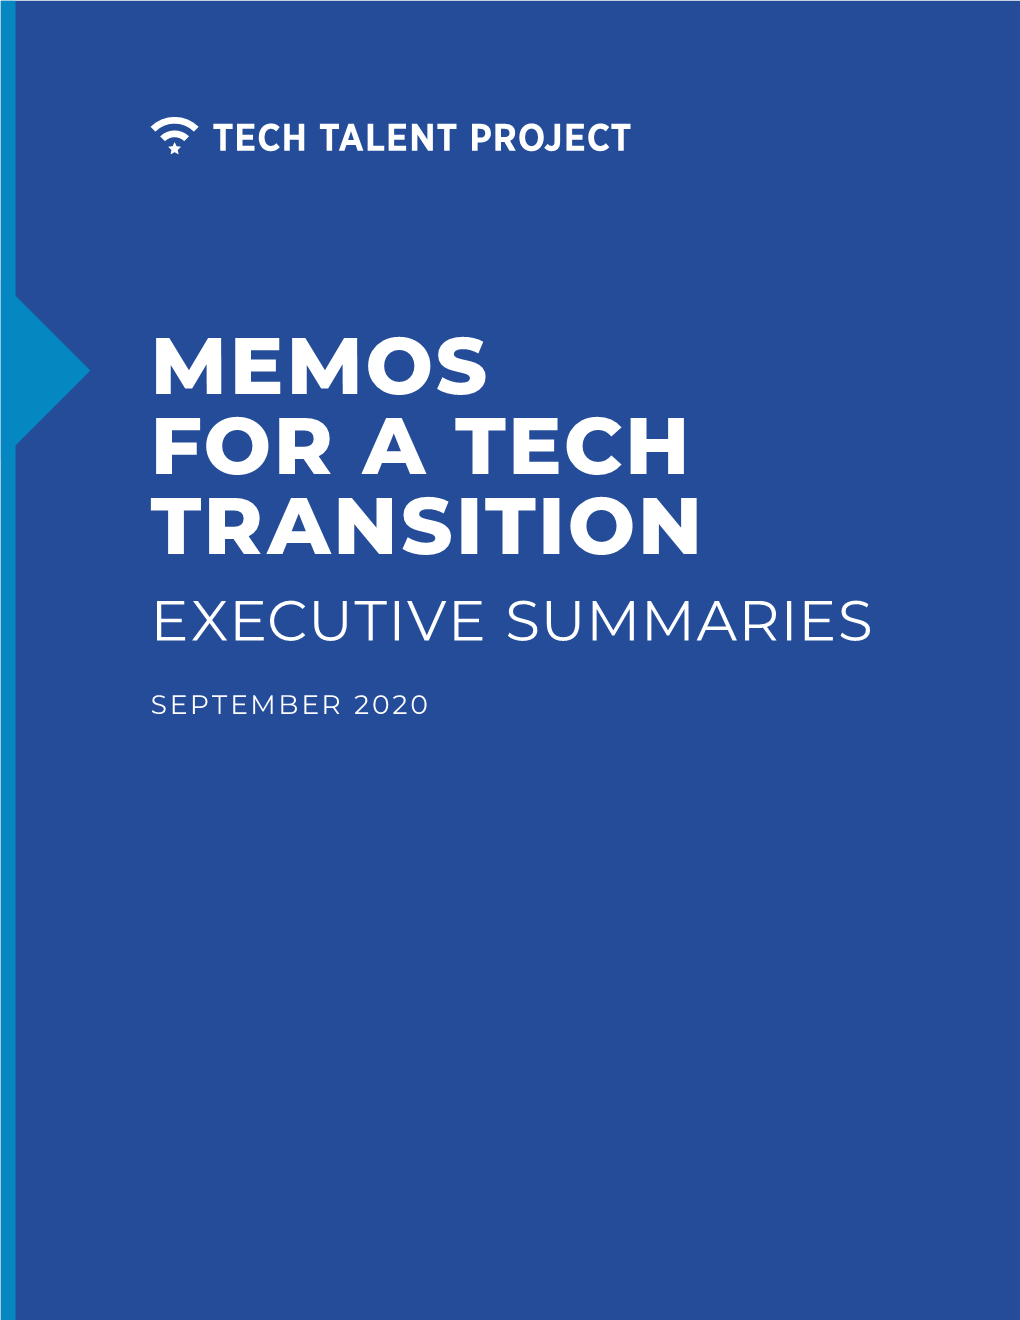 Memos for a Tech Transition Executive Summaries